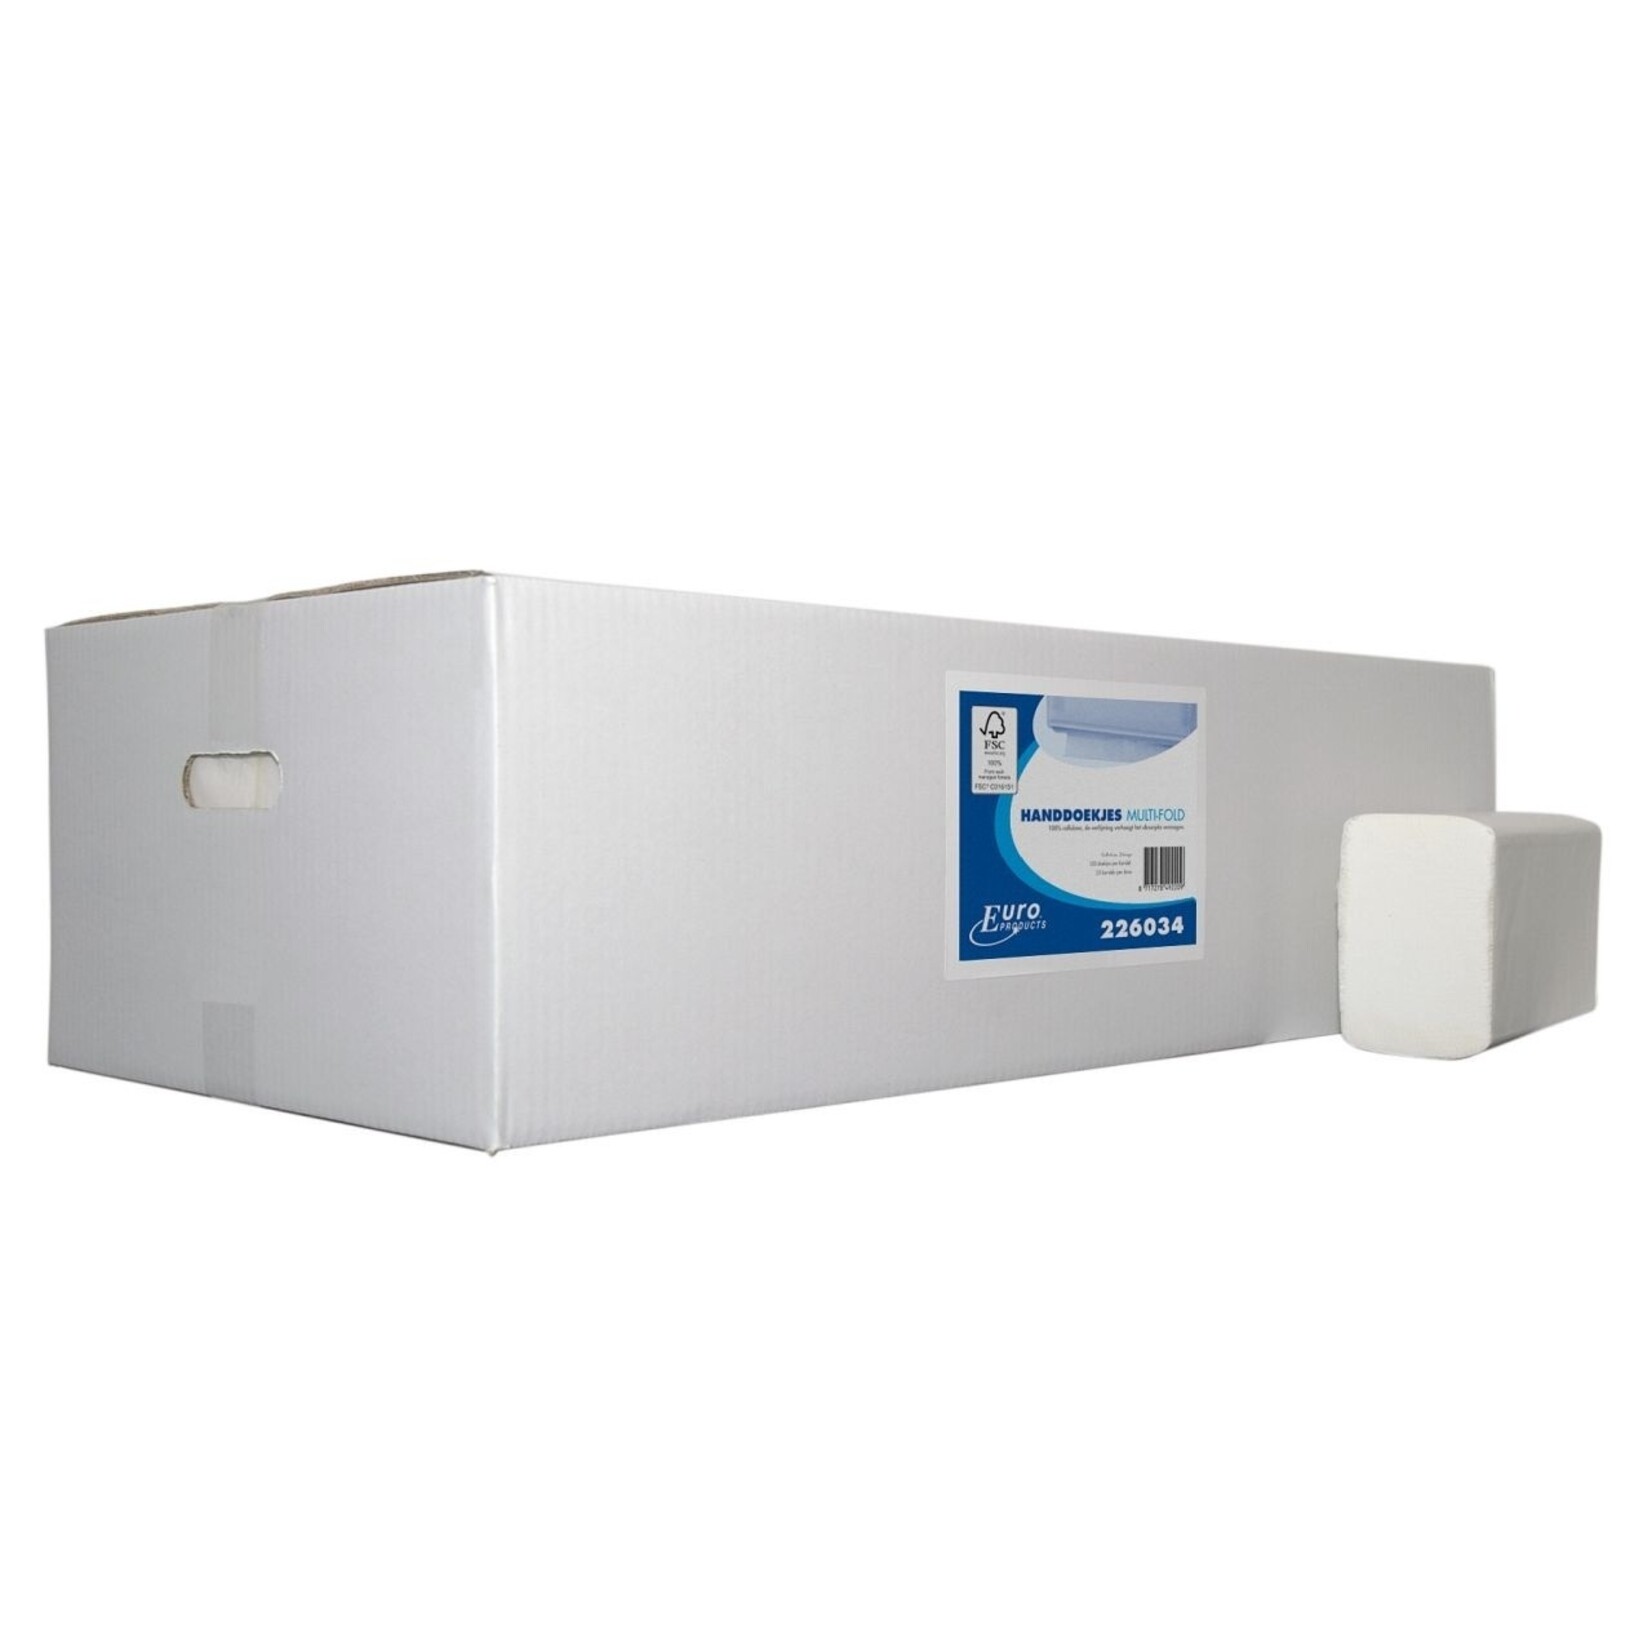 Handdoekpapier Euro M-fold verlijmd Cellulose 2-laags 20,6x32cm (20x160 per doos)